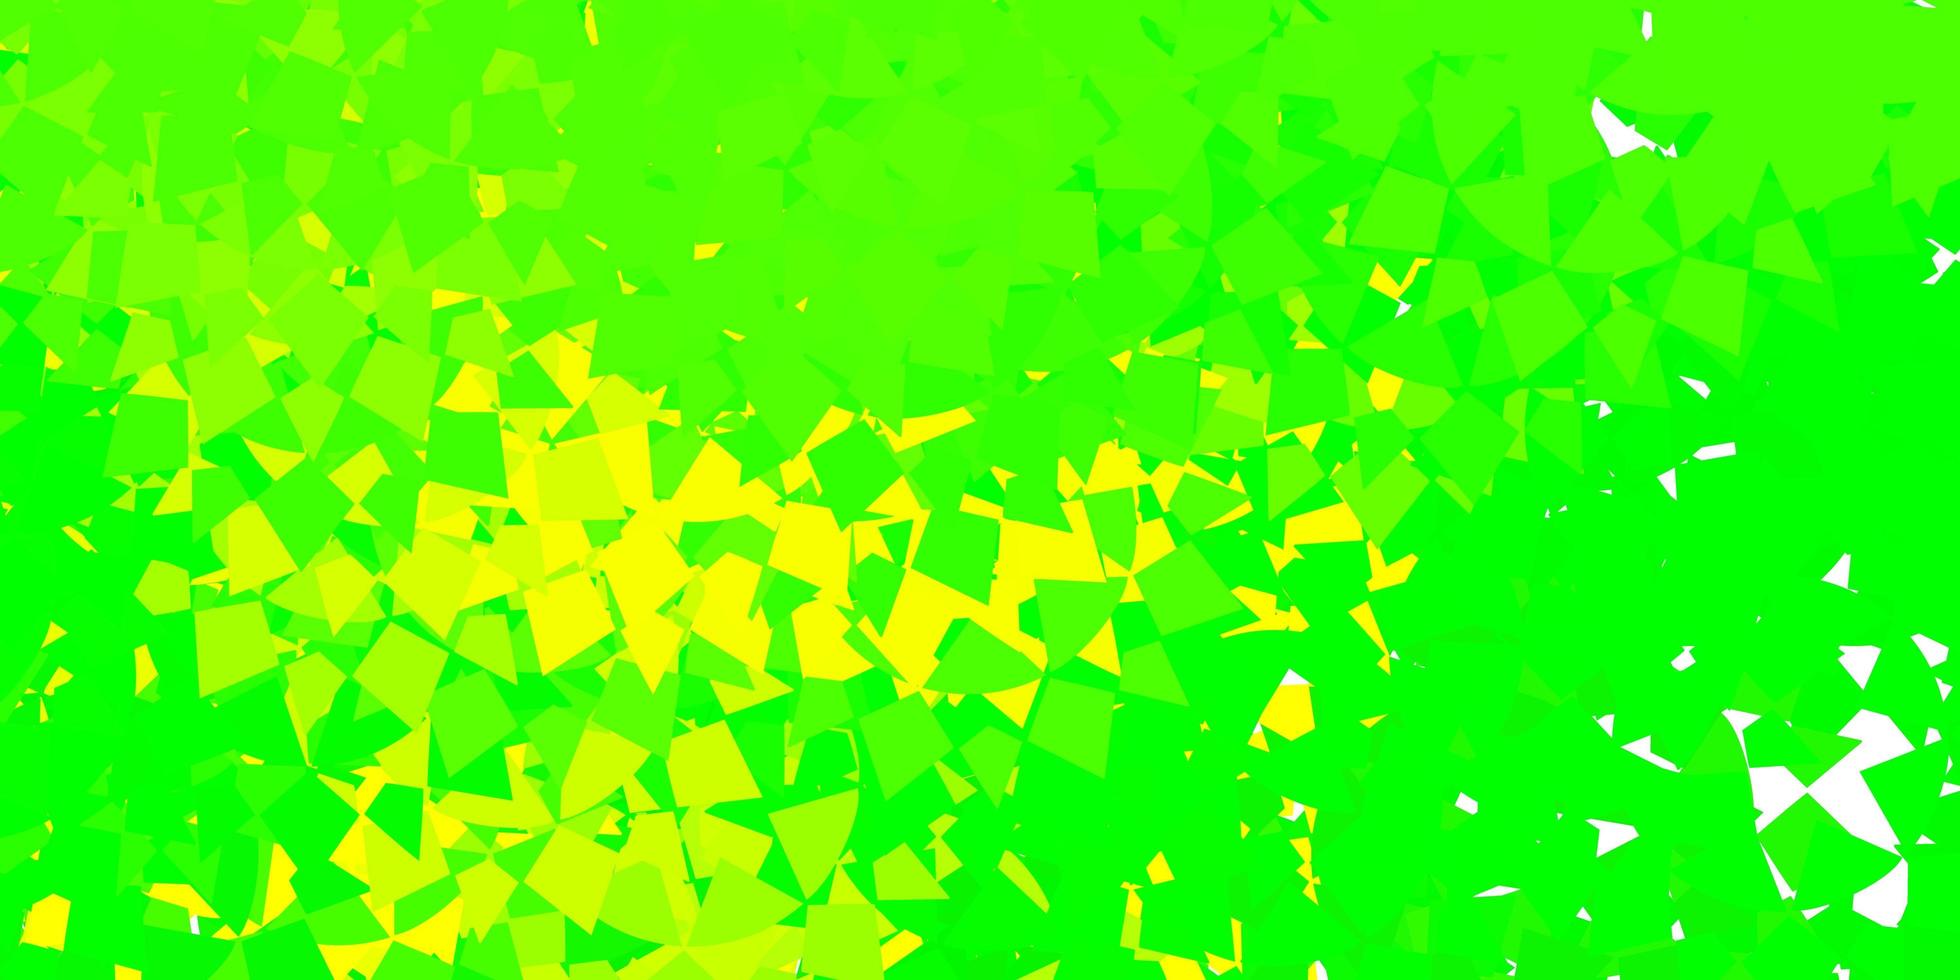 toile de fond de vecteur vert clair, jaune avec des triangles, des lignes.